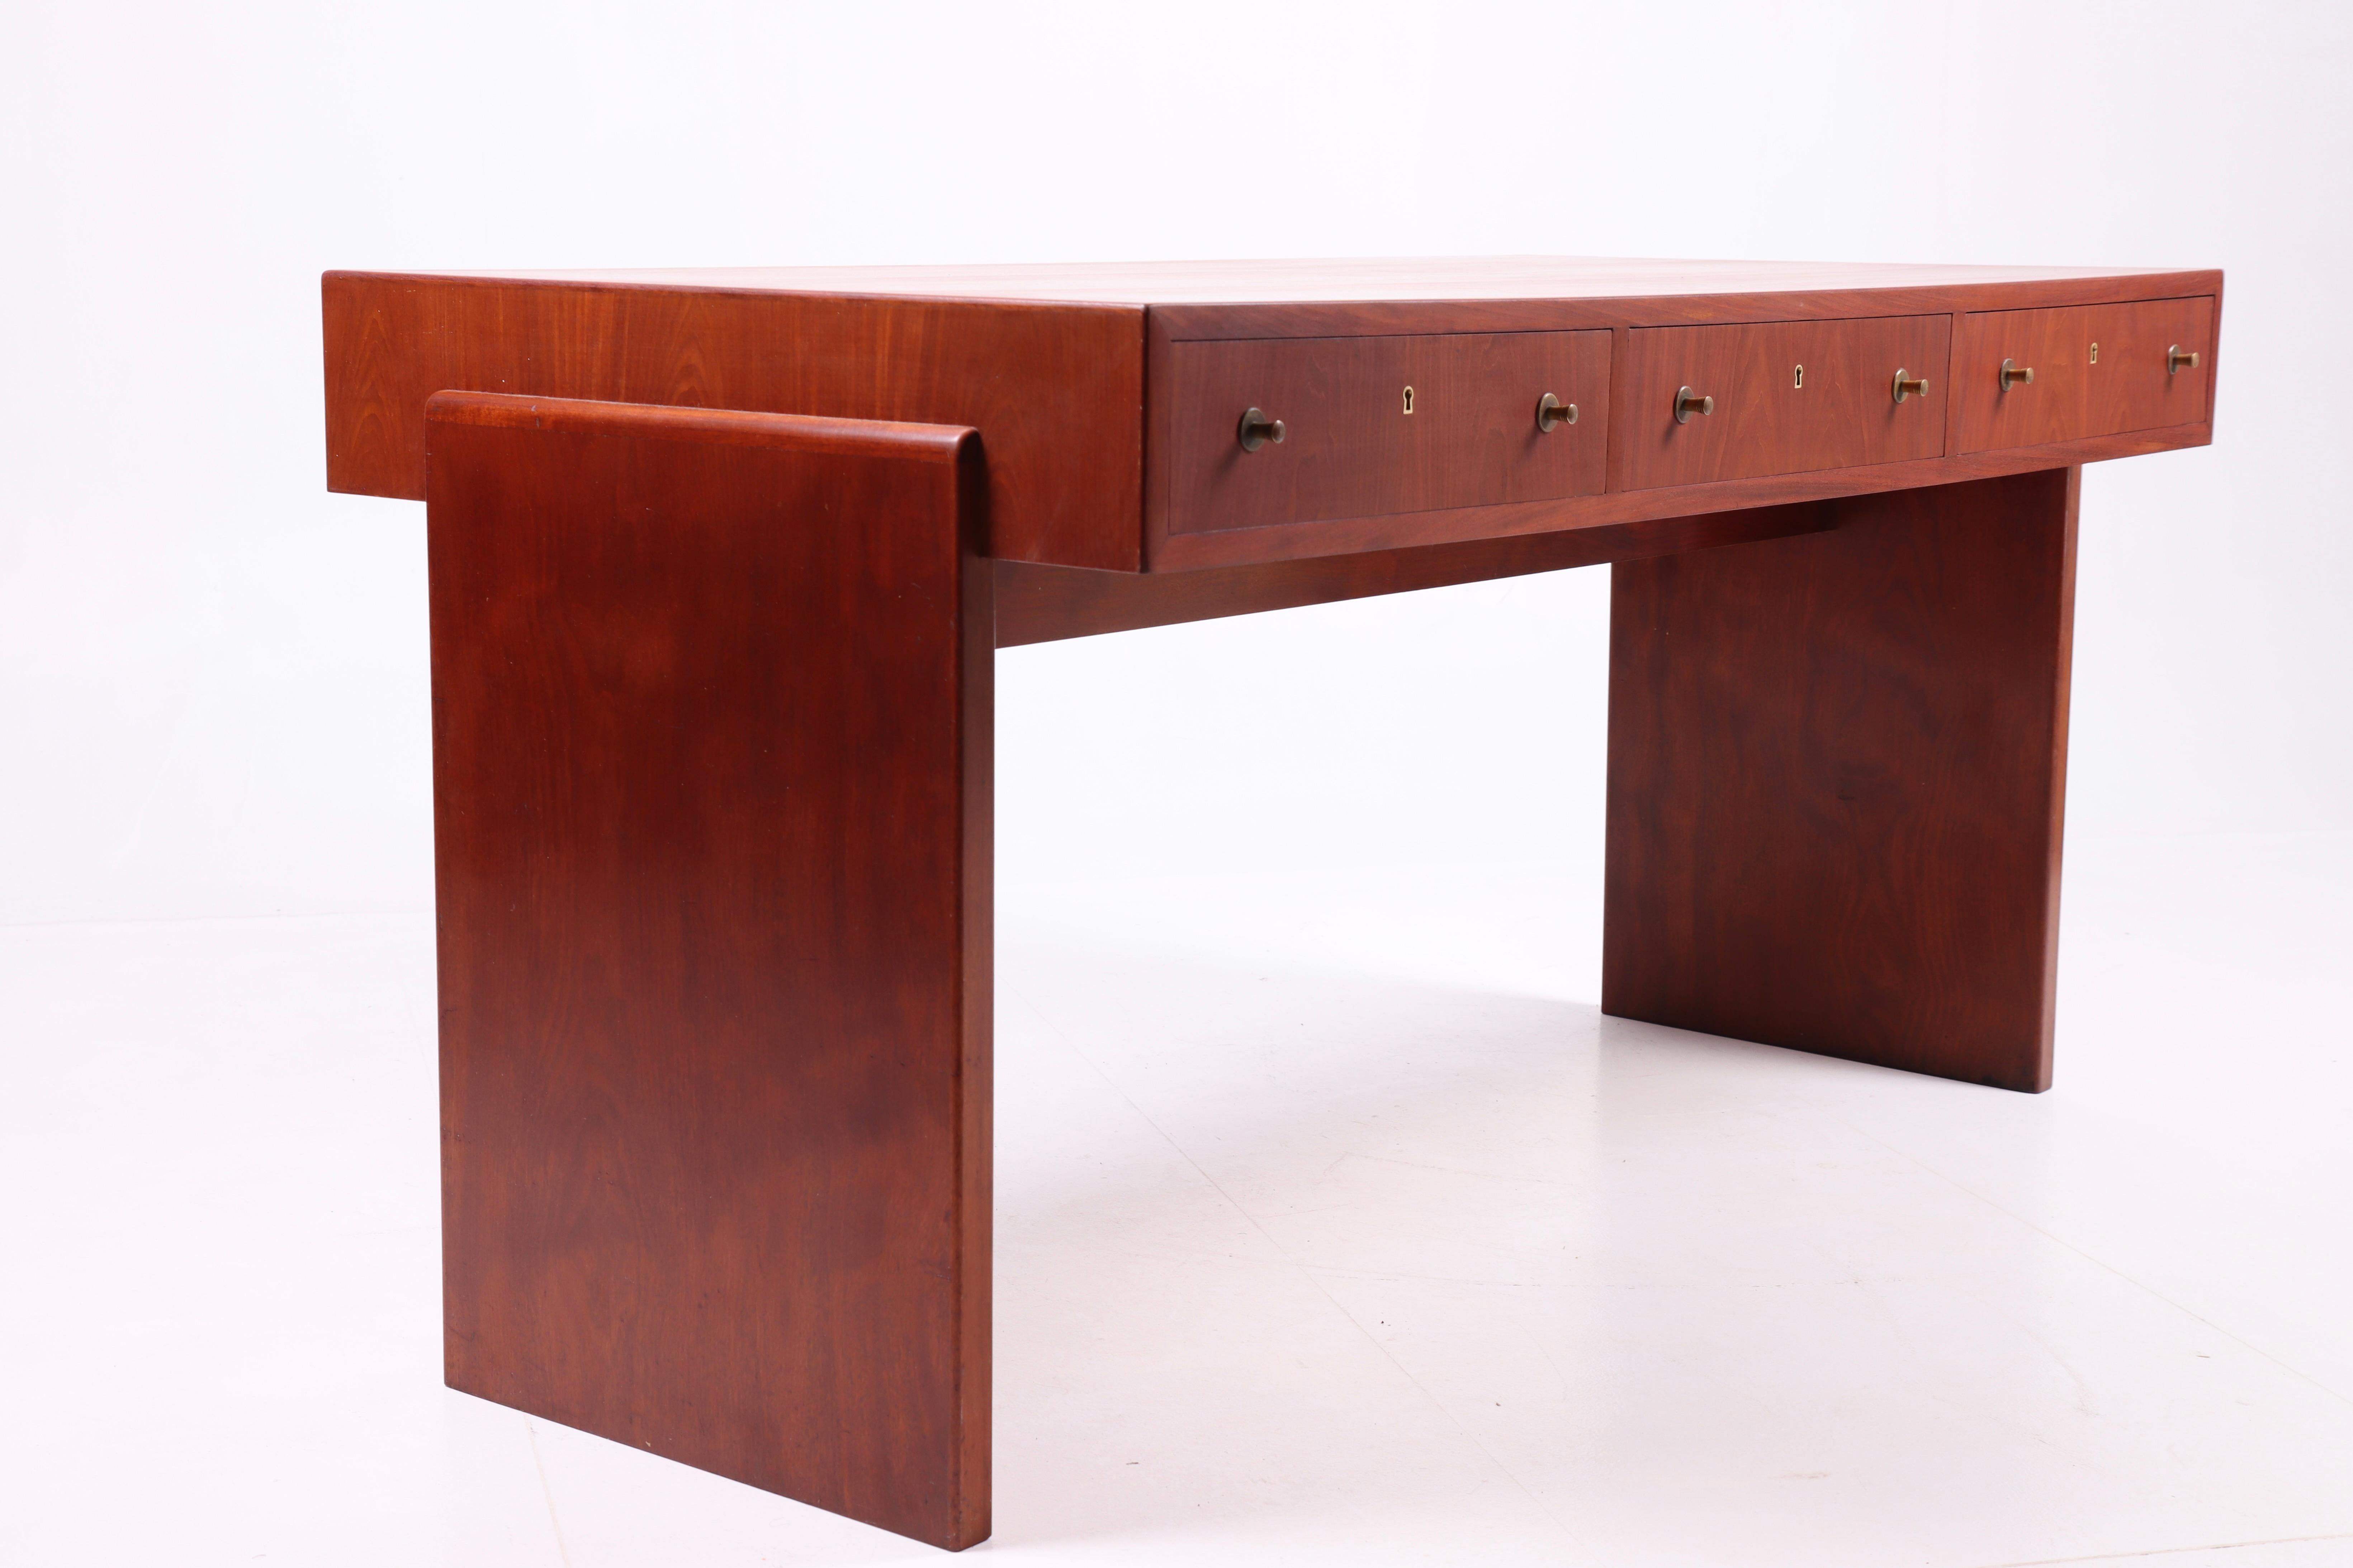 Mid-20th Century Art Deco Desk in Mahogany, Danish Design, 1950s For Sale